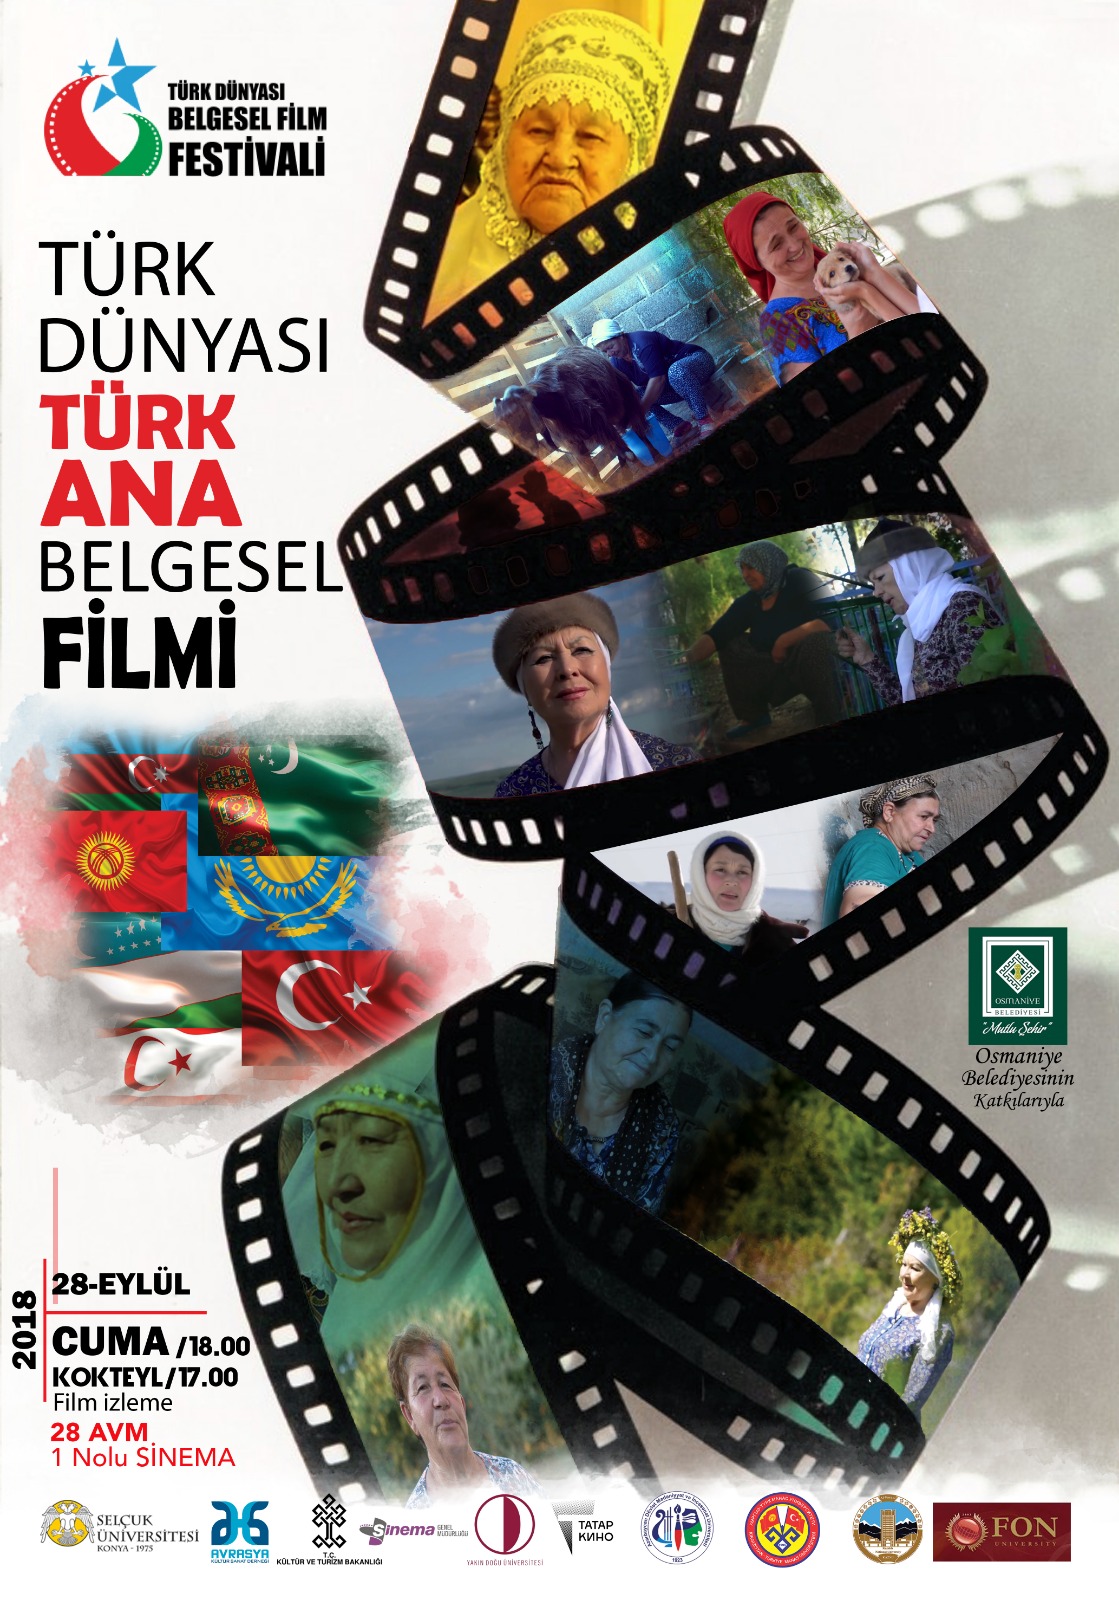 Yakın Doğu Üniversitesi İstanbul’da Türk Dünyası Belgesel Film Festivali Gala Gecesine Katılıyor…